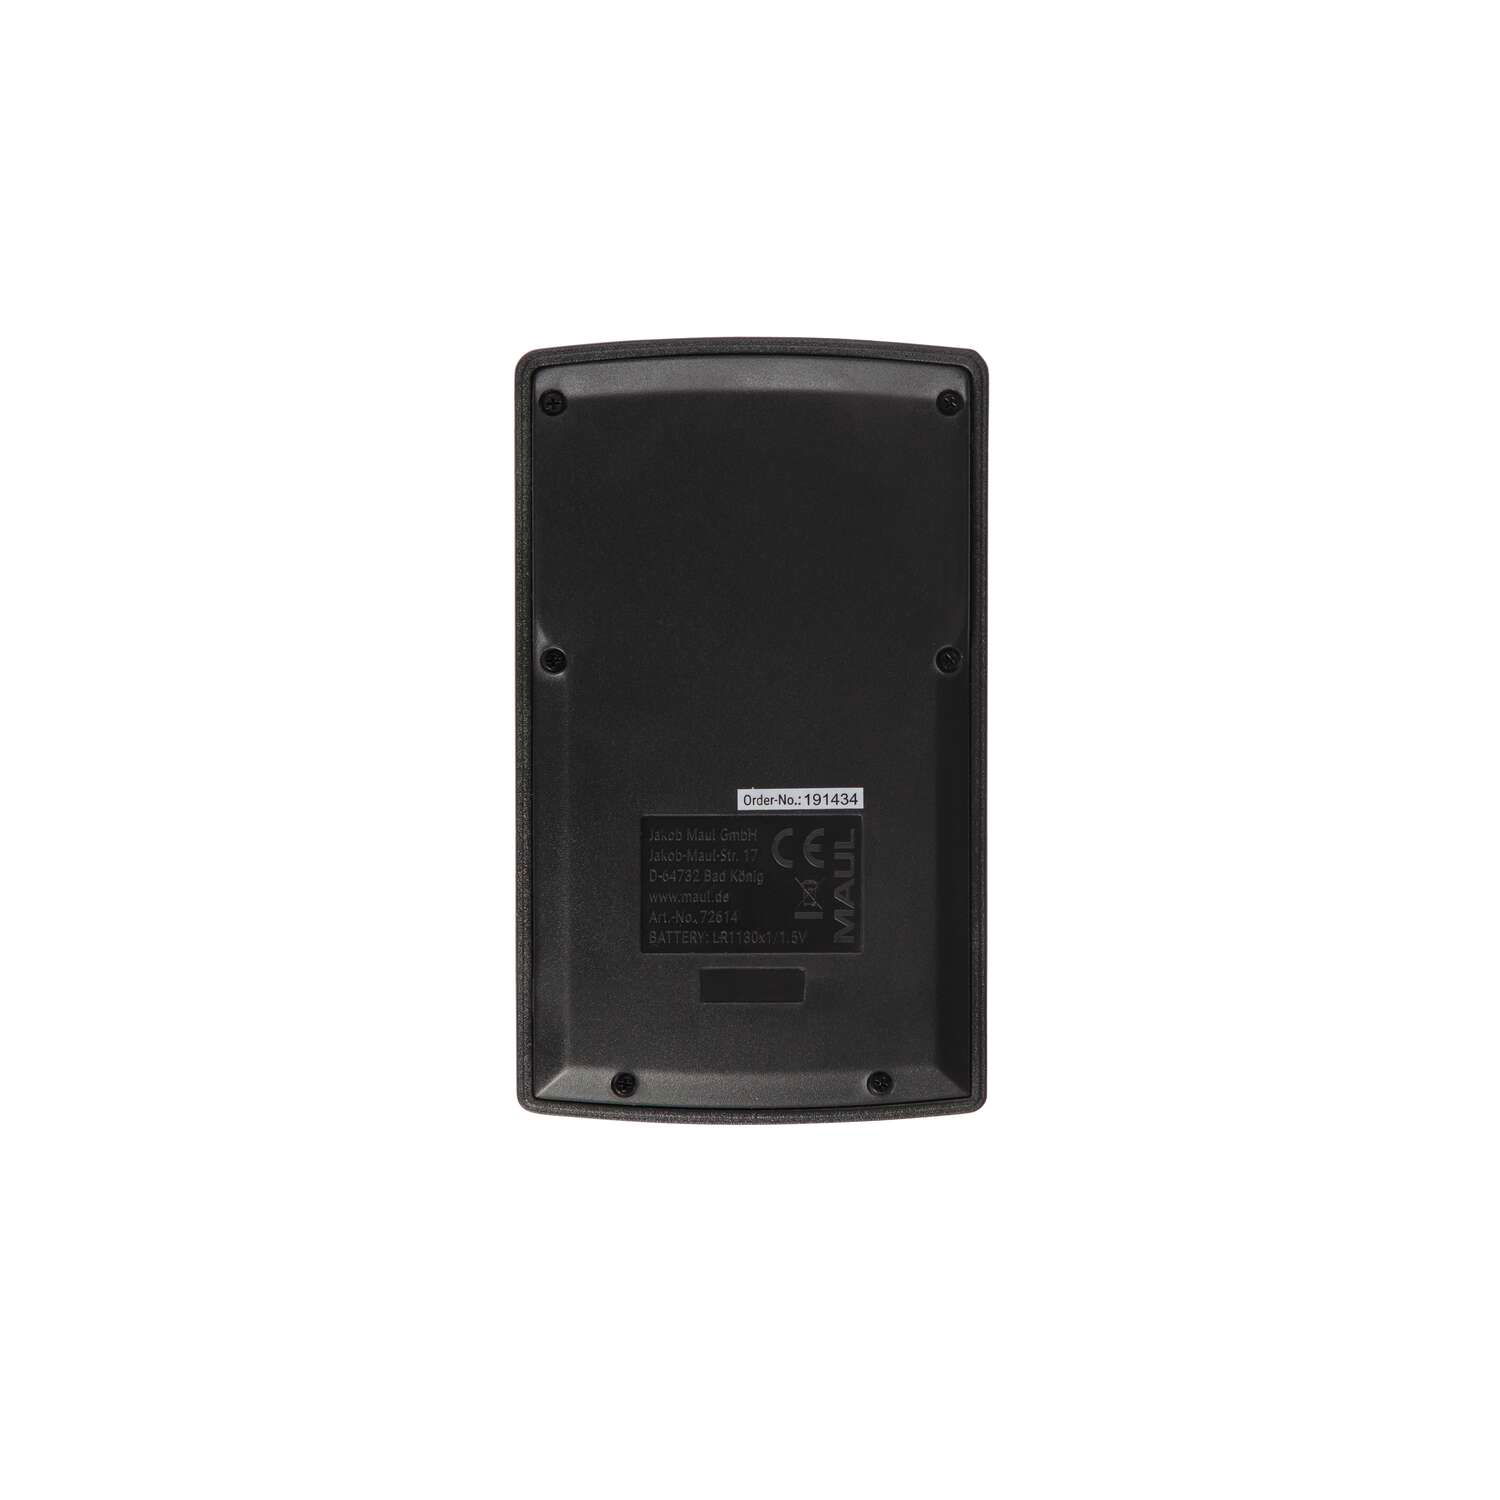 MAUL Taschenrechner M 12 Solar Batterie 1-zeilig, 12 Ziffern schwarz